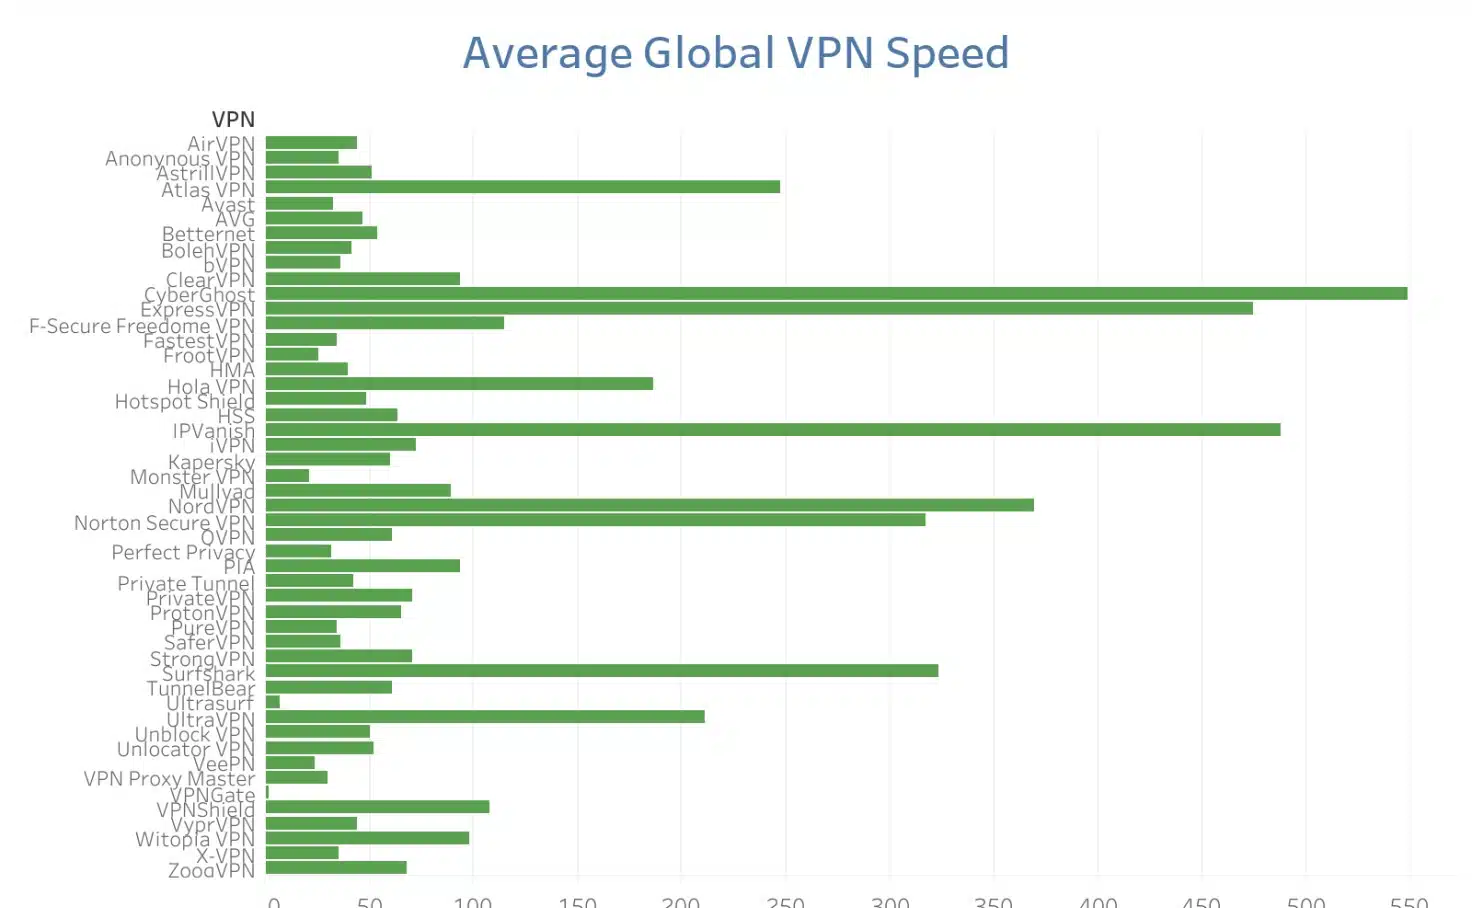 Comparitech - VPN Speed Comparison